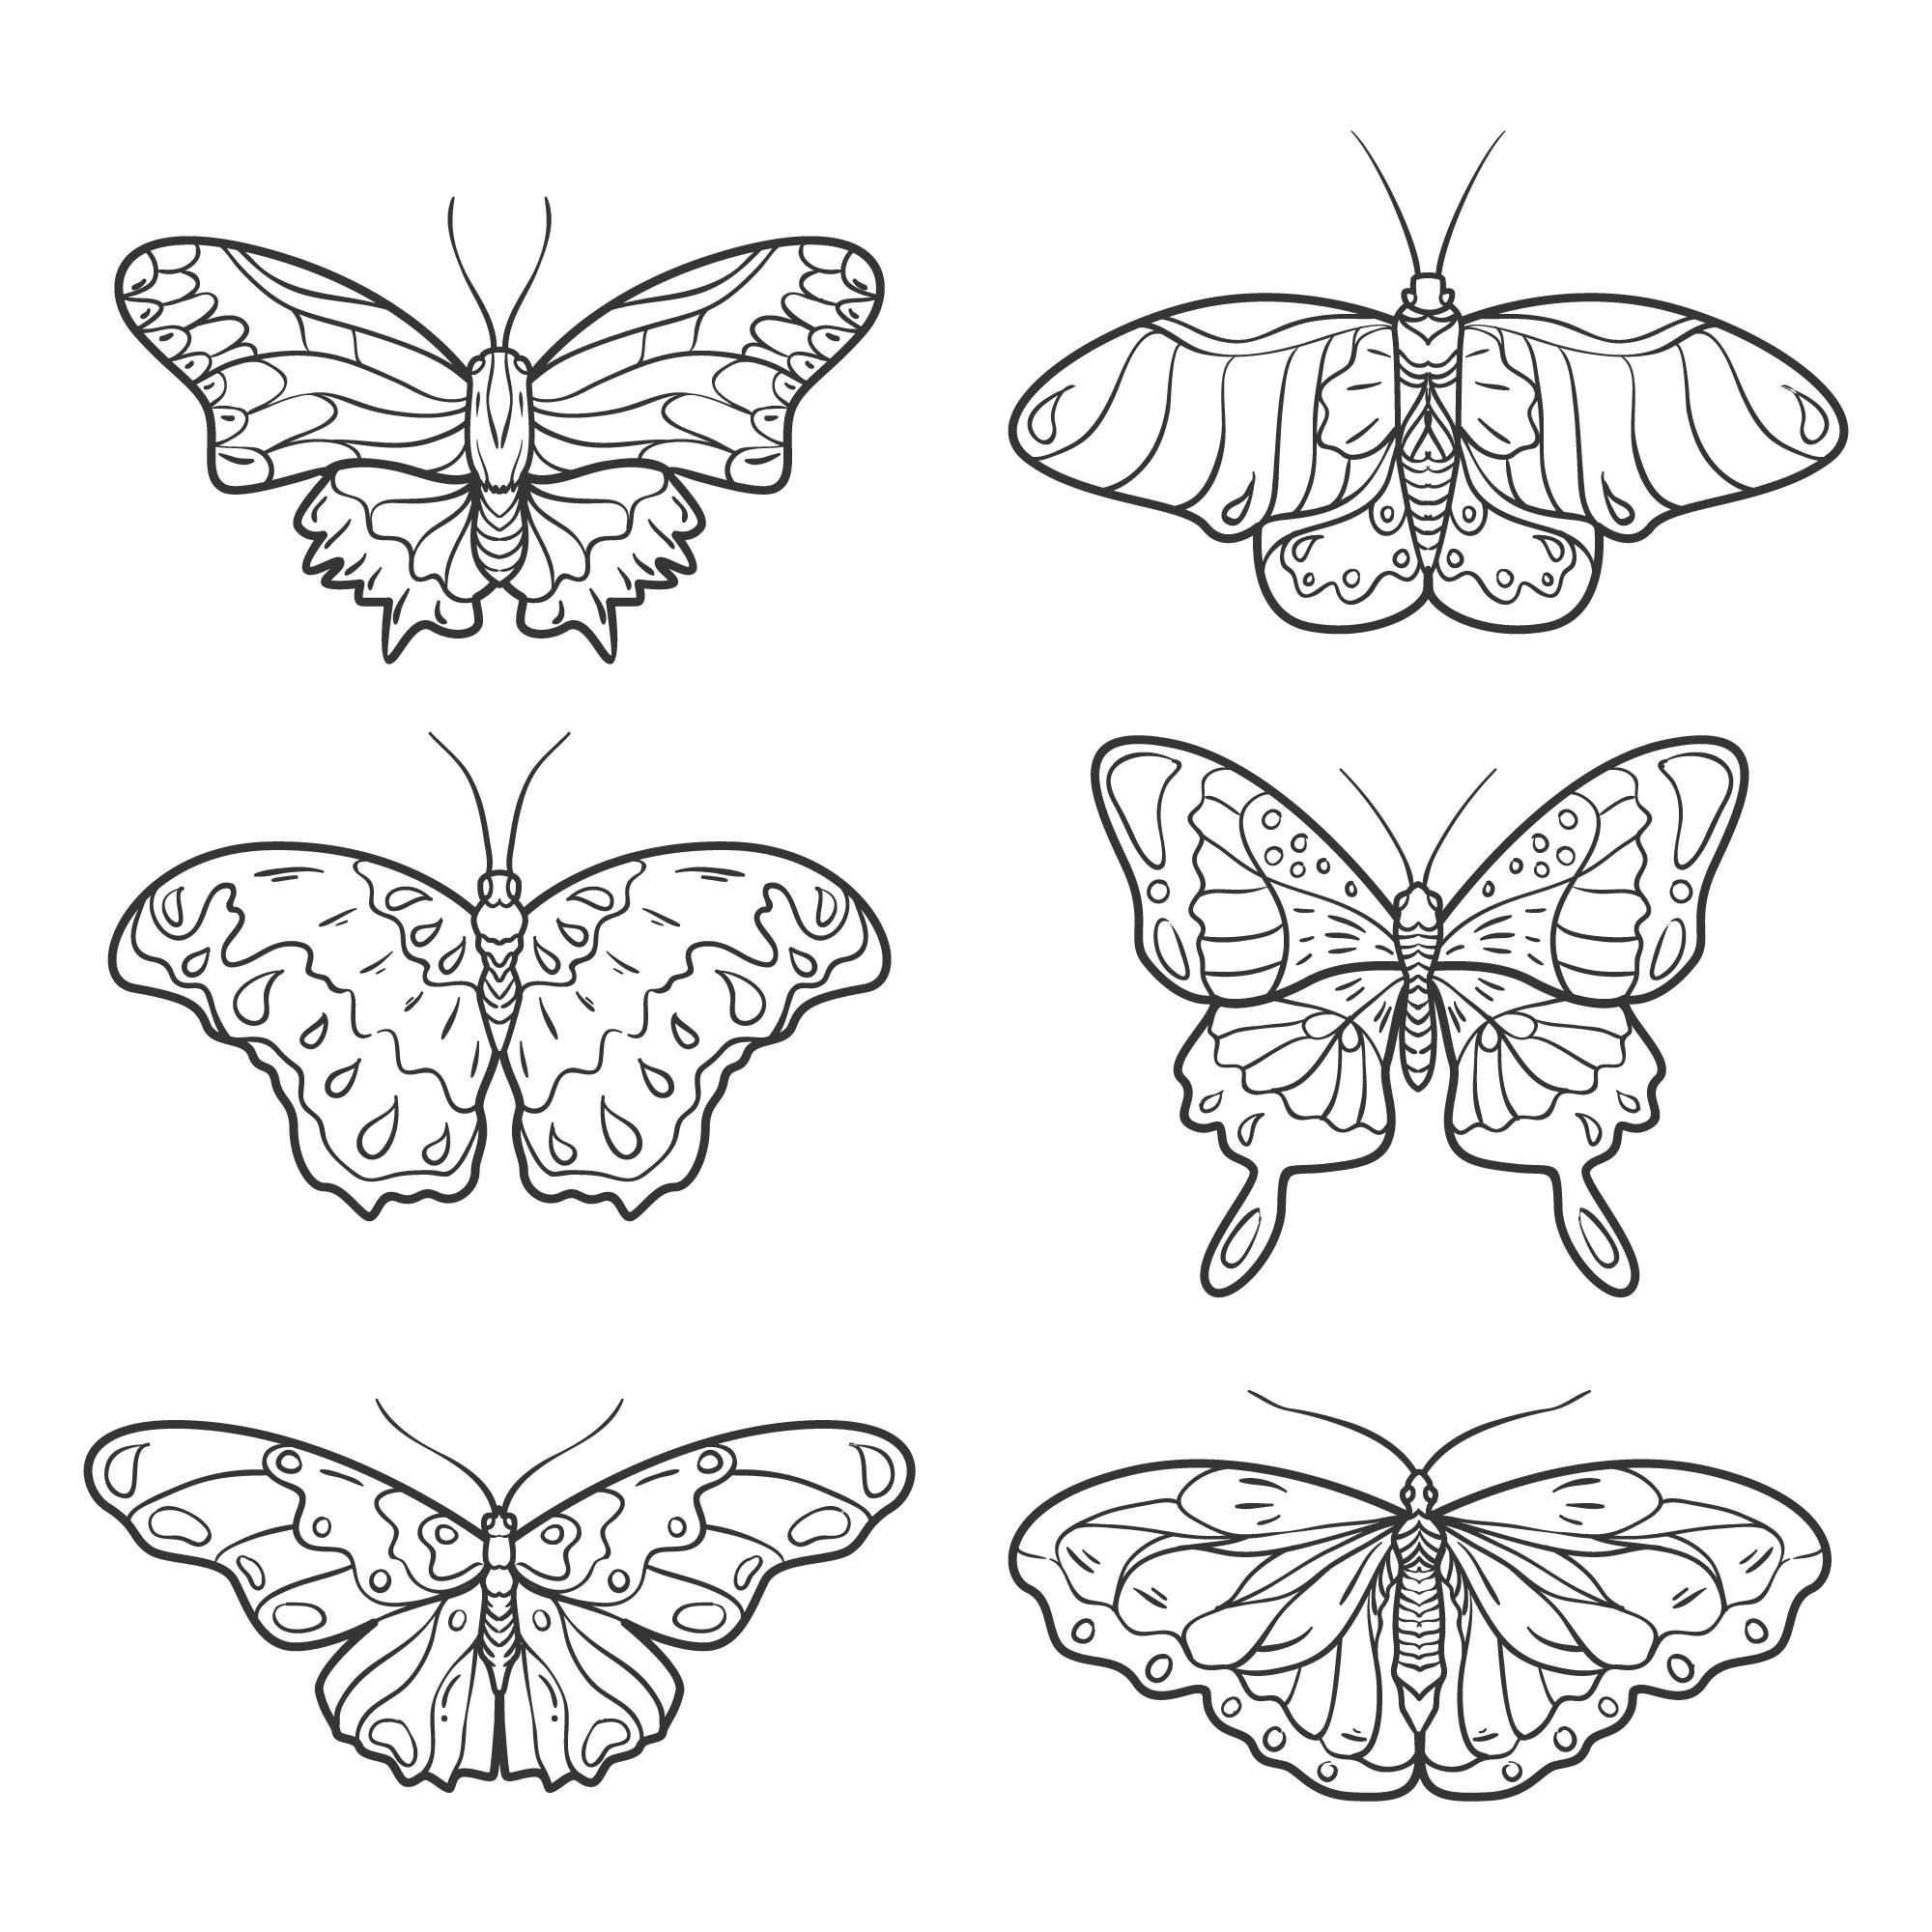 Раскраска для детей: набор из шести бабочек